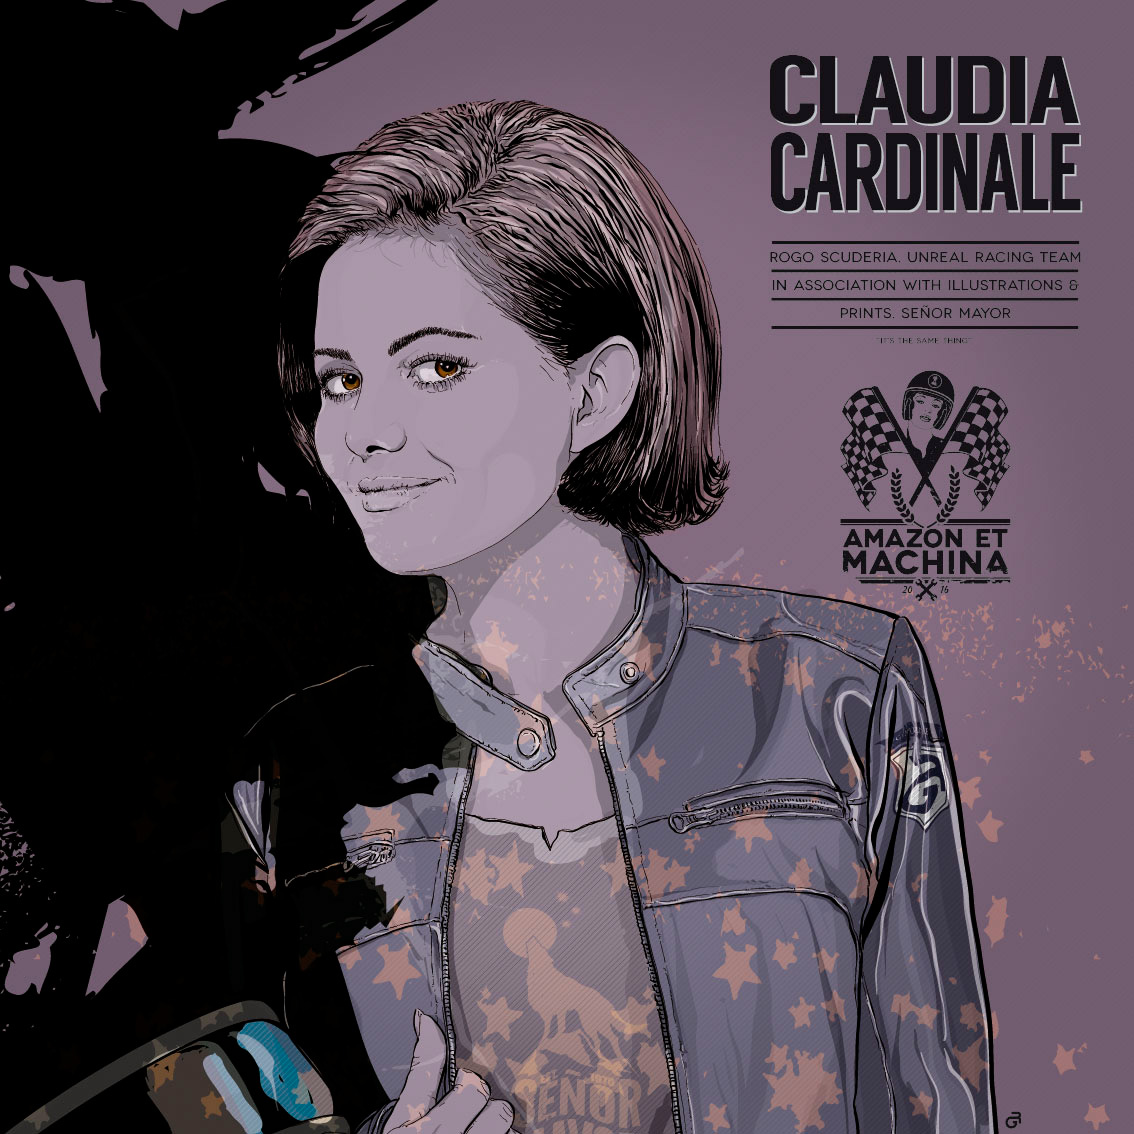 Claudia Cardinale y su Ducati 750. Retrato lamina